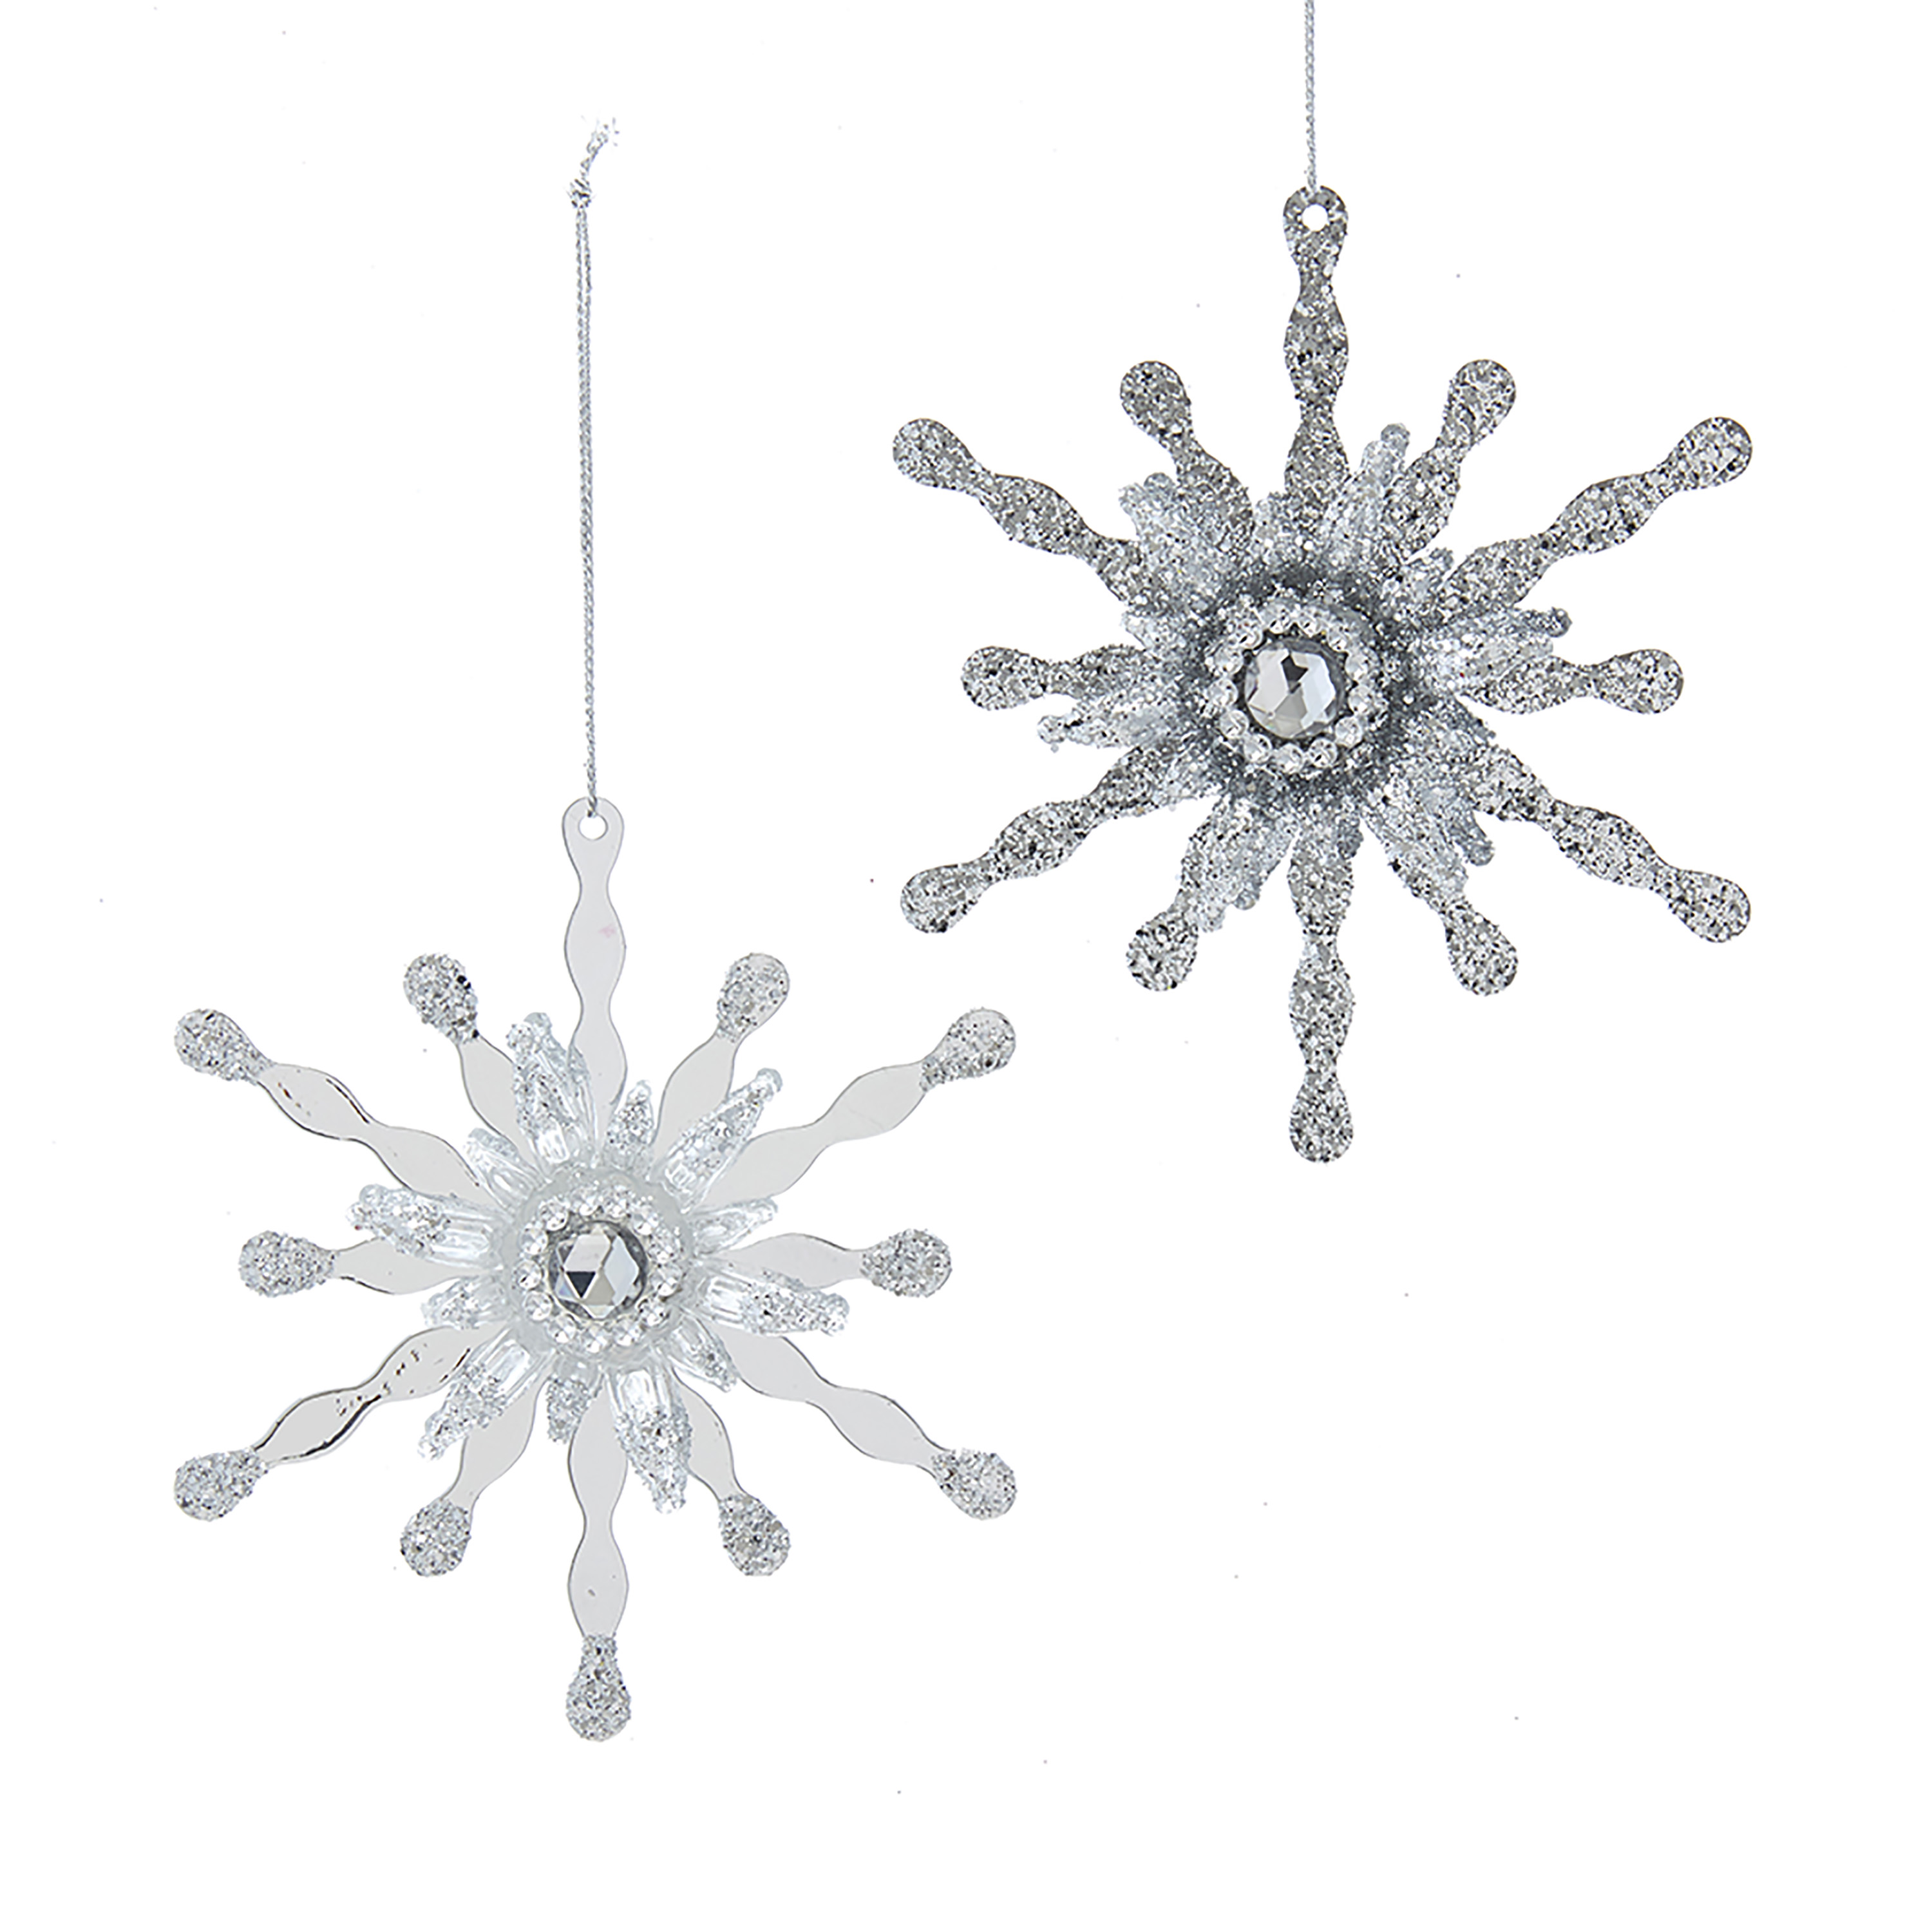 Ornament White & Silver metaal h11 cm - Kurt S. Adler